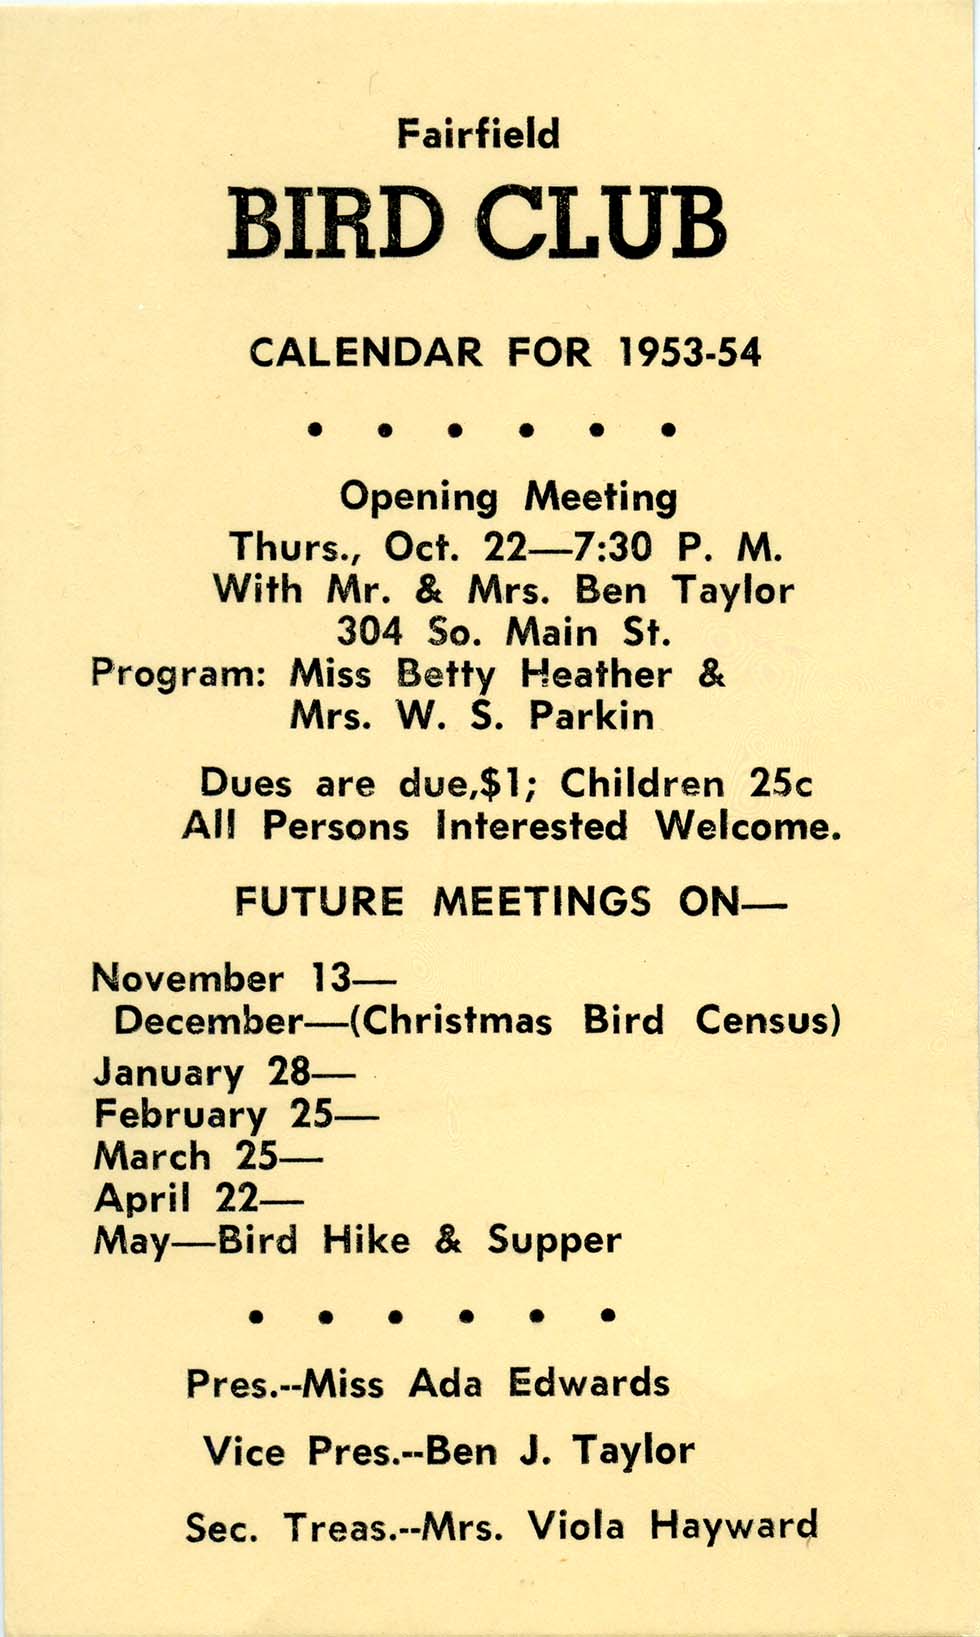 Fairfield Bird Club Calendar for 1953-54